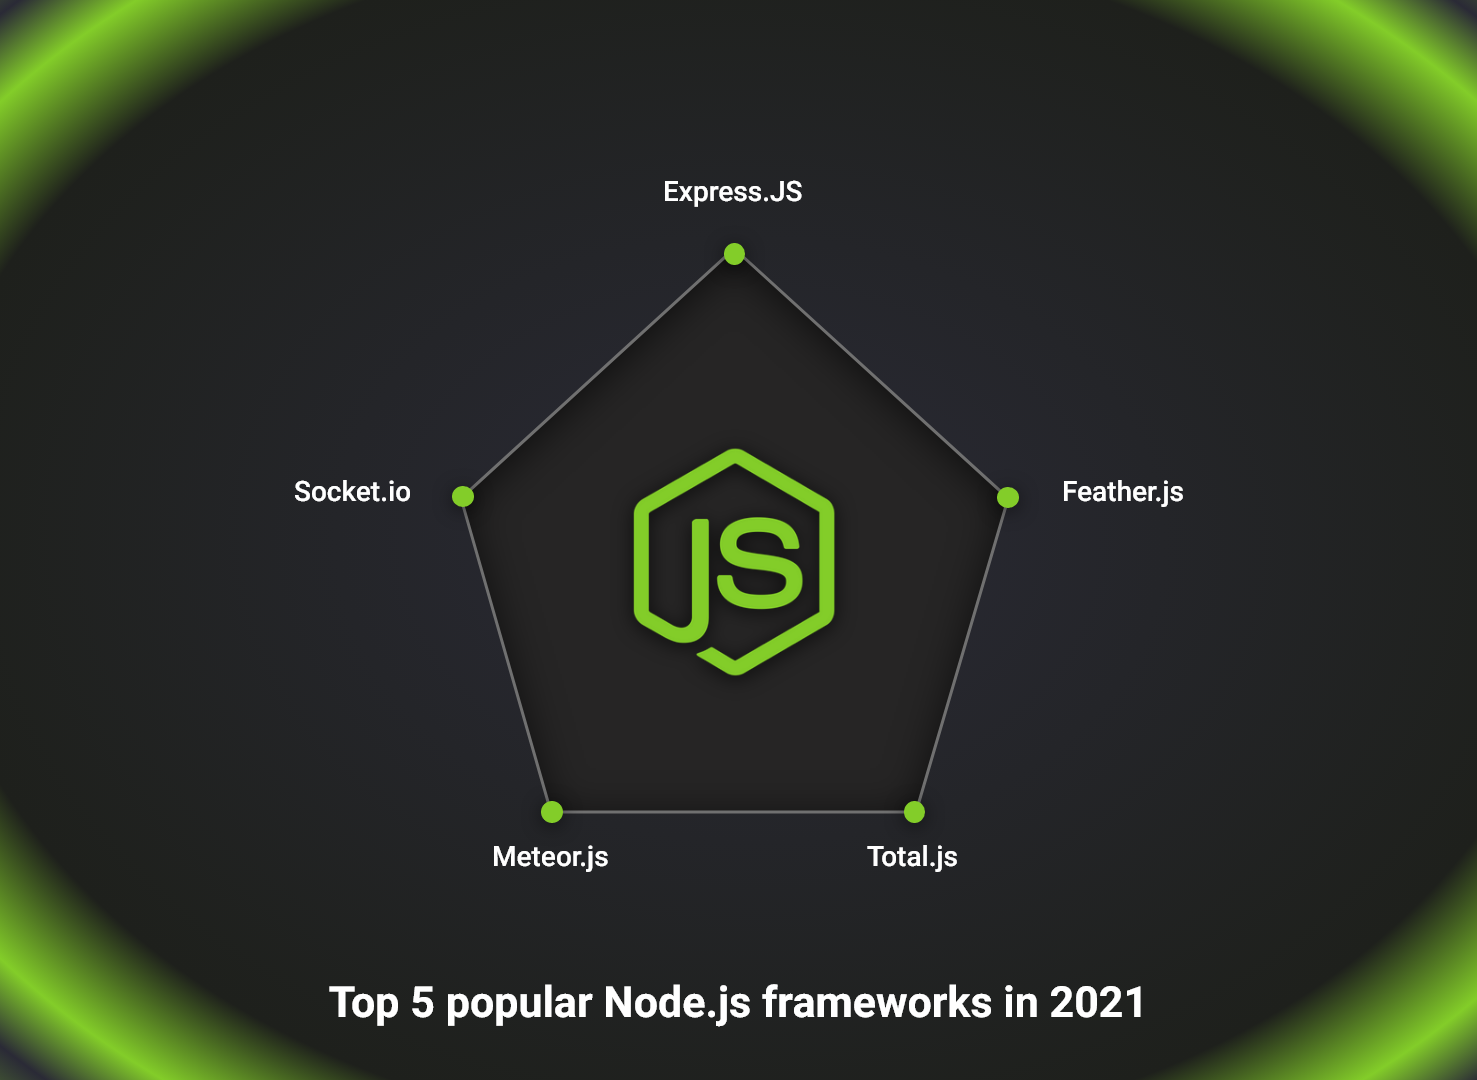 Top 5 popular Node.js frameworks in 2021 